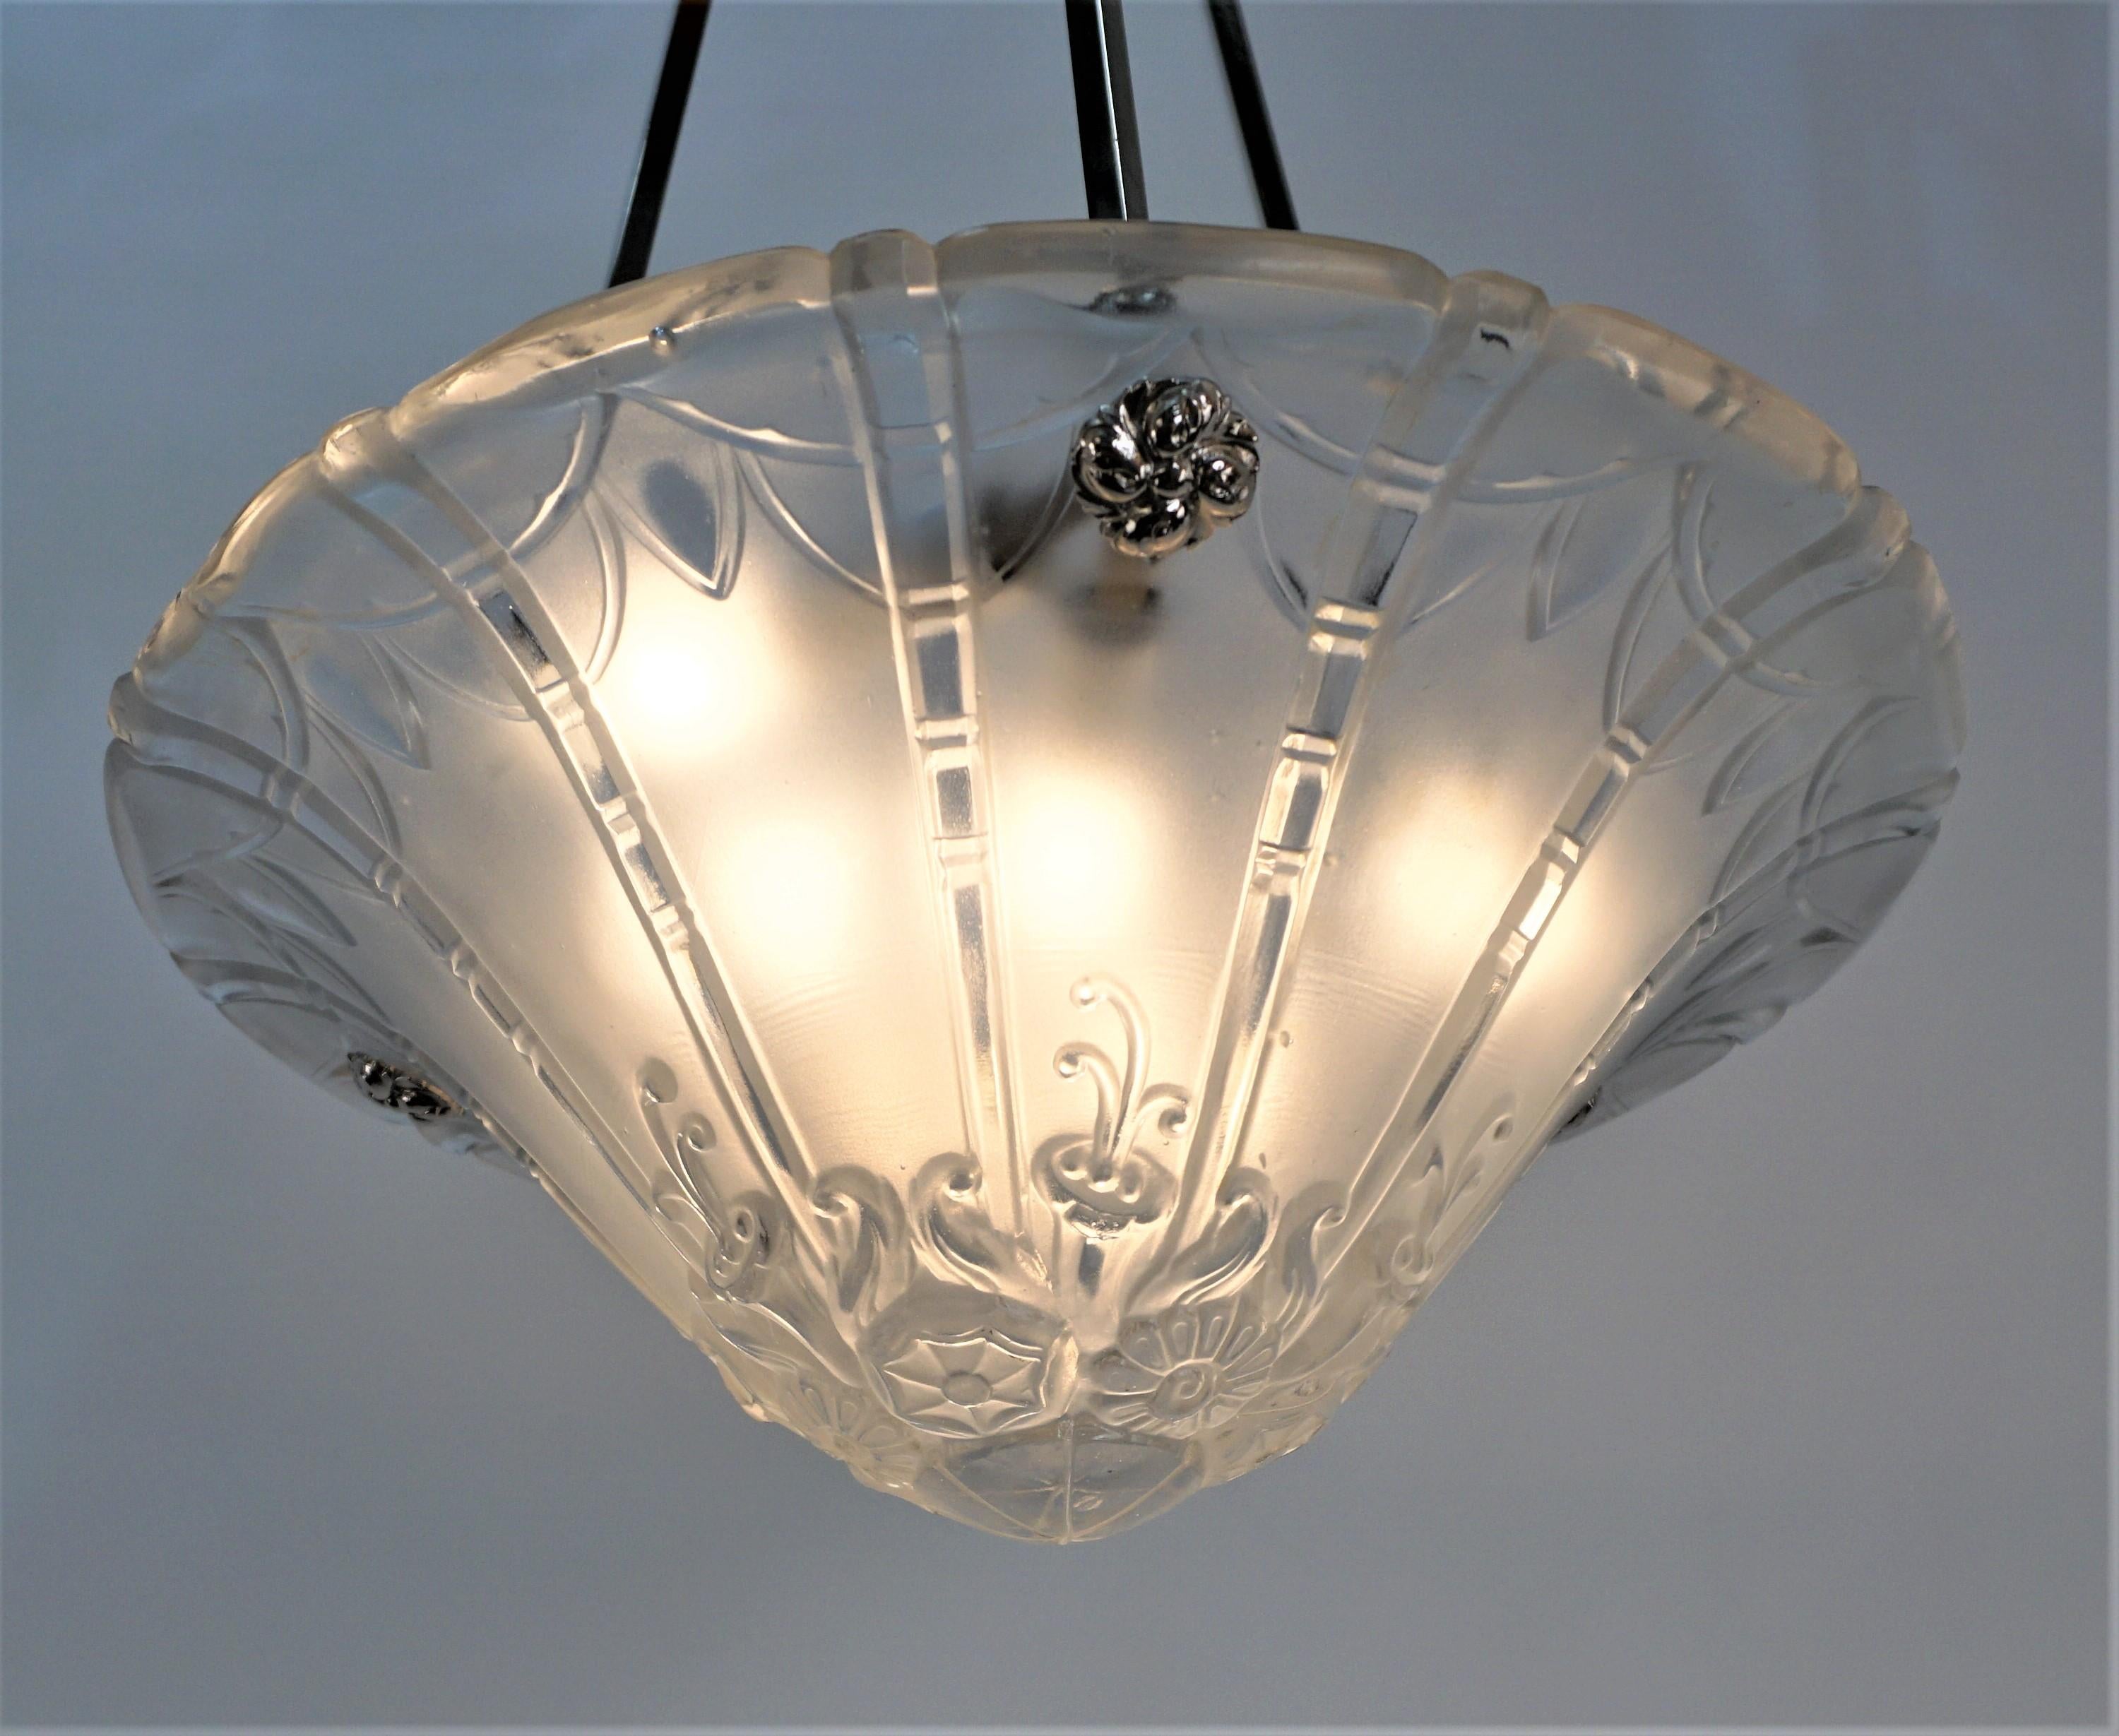 Wunderschönes klares Frost Art Deco Glas von Daum/Lorrain mit Nickel auf Bronze Beschlägen.
Professionell neu verkabelt und einbaufertig.
Sechs Leuchten, je 60 Watt.